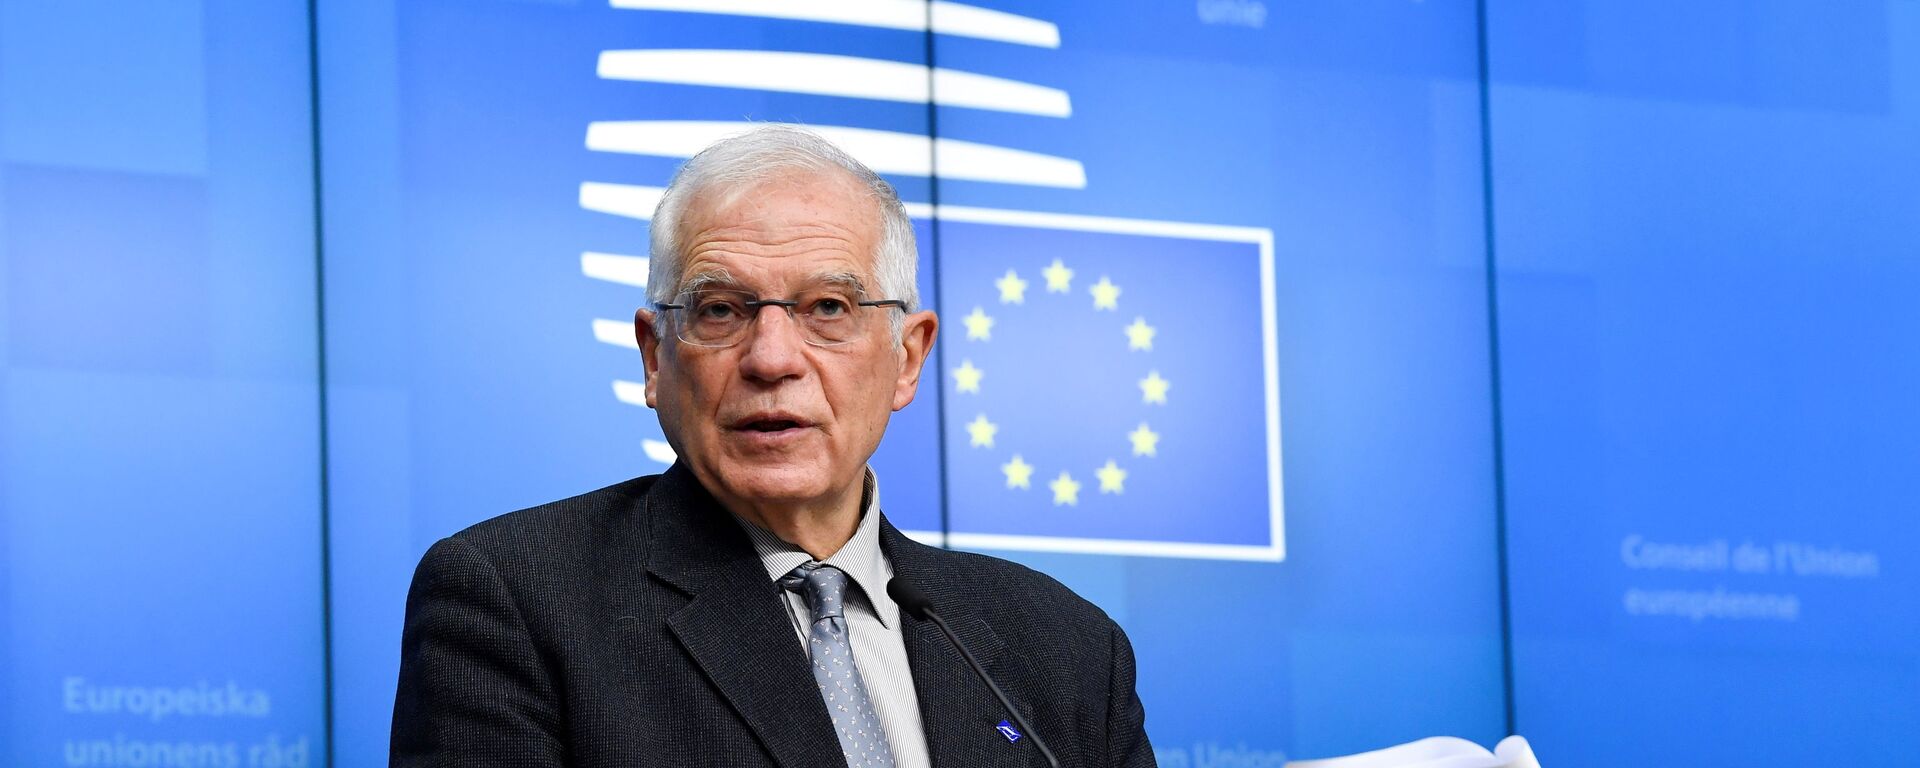 Josep Borrell, alto representante para la Política Exterior de la UE - Sputnik Mundo, 1920, 29.12.2021